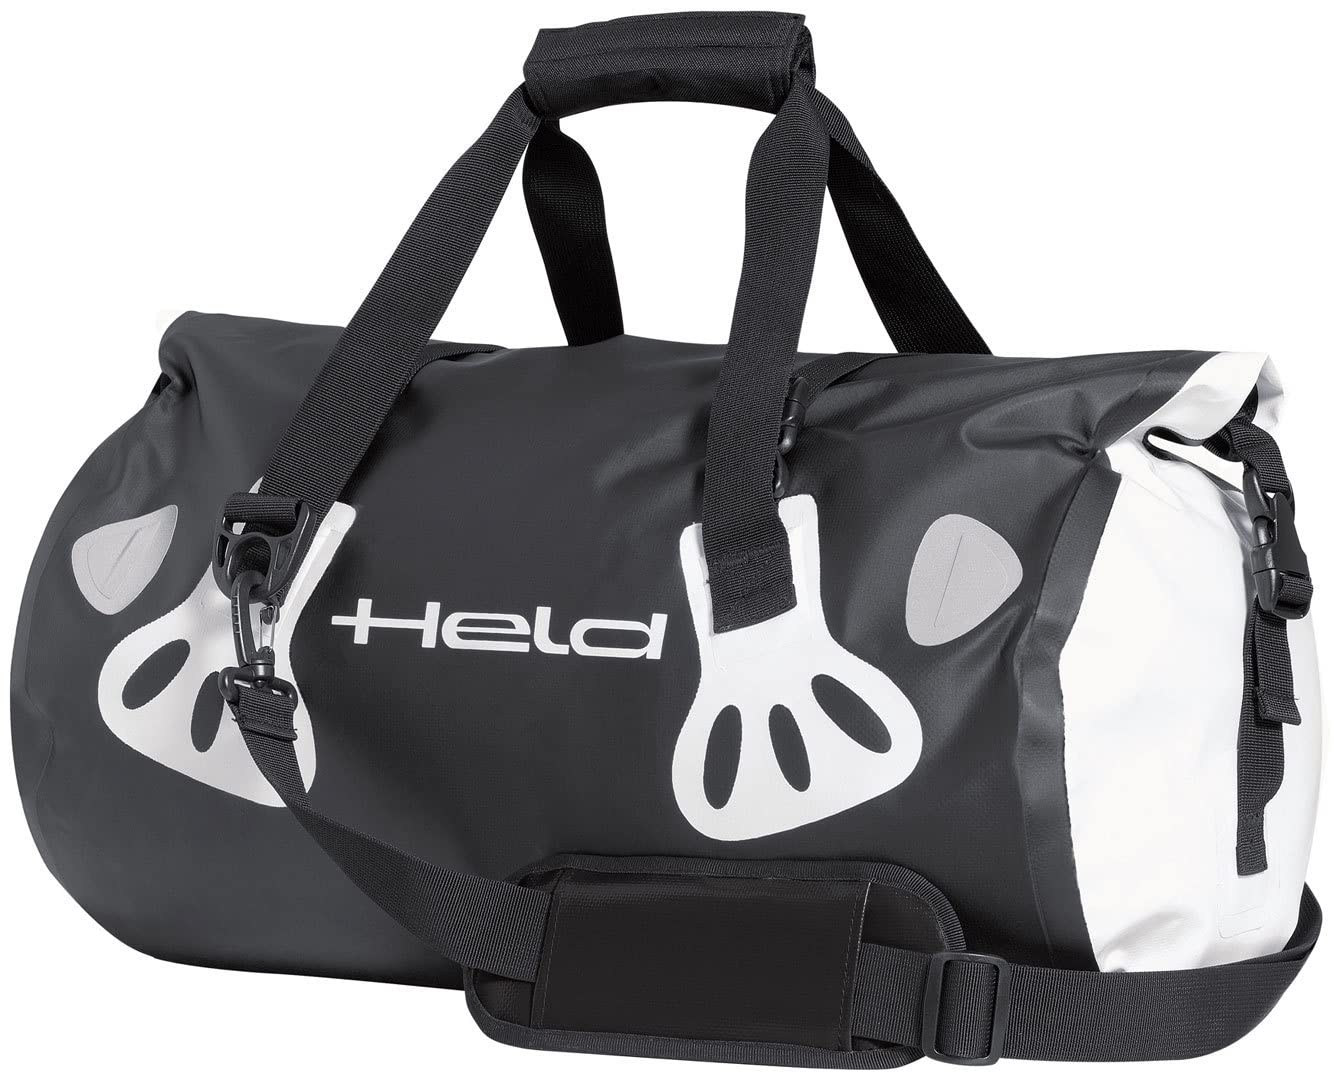 Held Carry-Bag Gepäcktasche, Farbe schwarz-Weiss, größe 60 Liter von Held